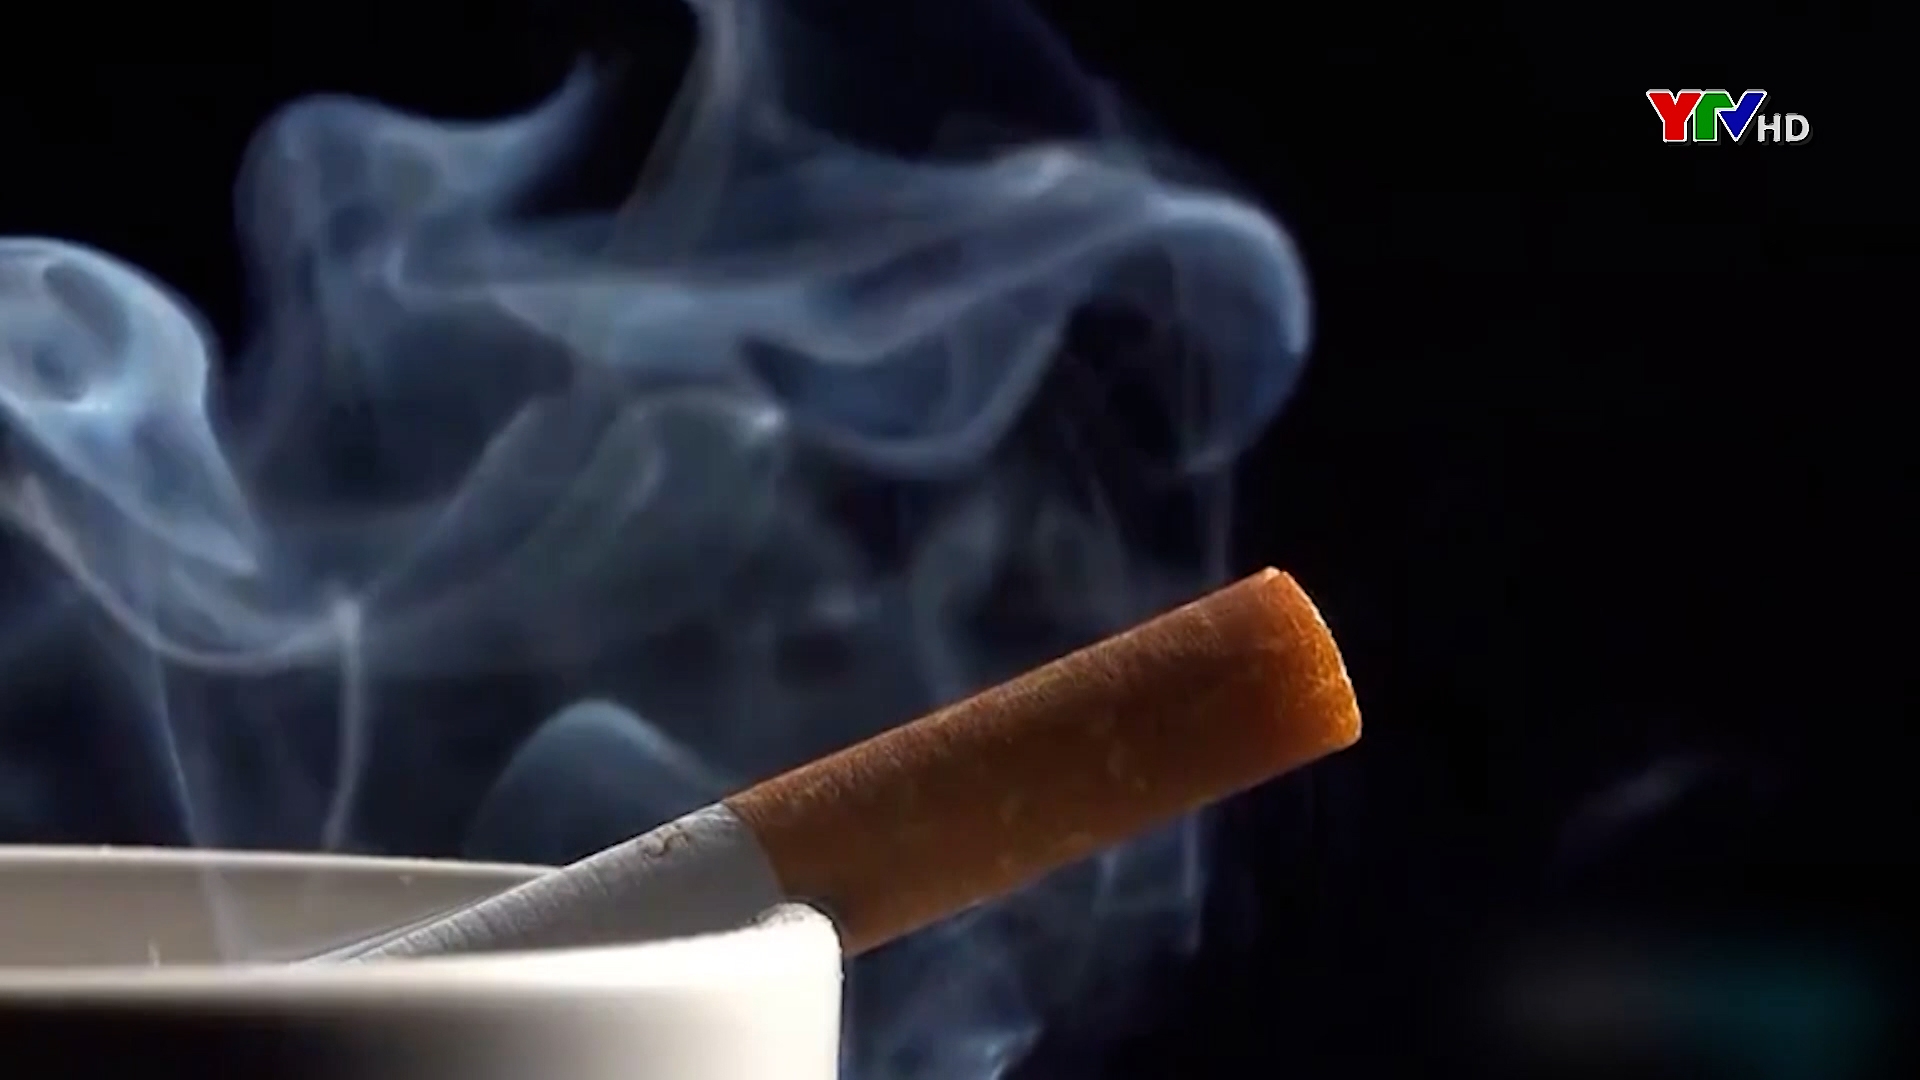 Phòng chống tác hại của thuốc lá - Vì sức khỏe và tương lai